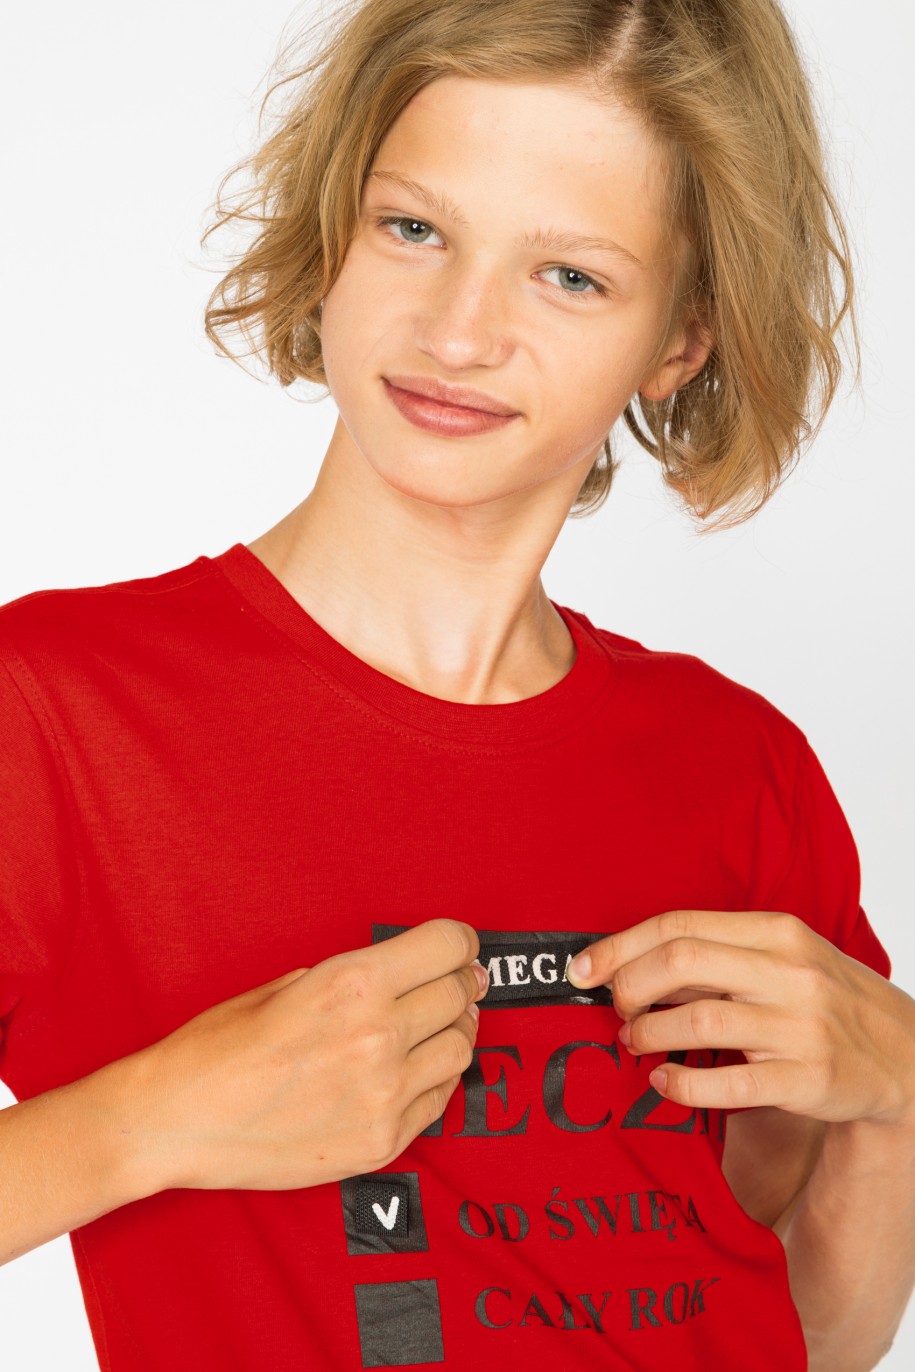 Czerwony t-shirt dla chłopaka MEGA GRZECZNY - 44916